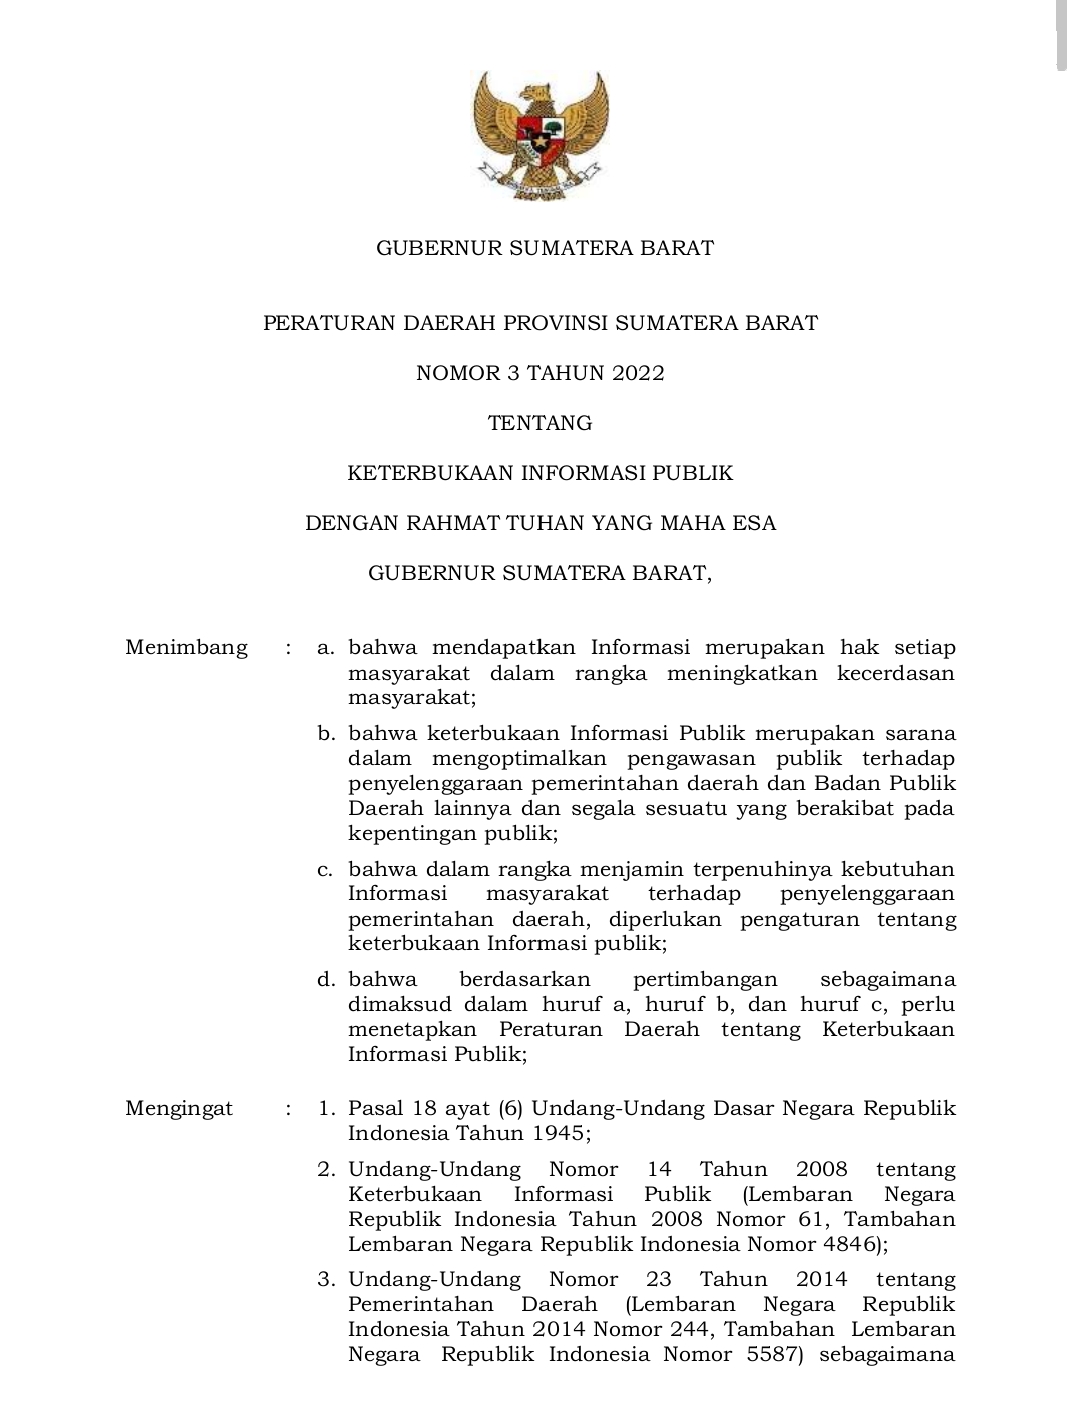 Peraturan Daerah Provinsi Sumatera Barat Nomor 3 Tahun 2022 Tentang Keterbukaan Informasi Publik